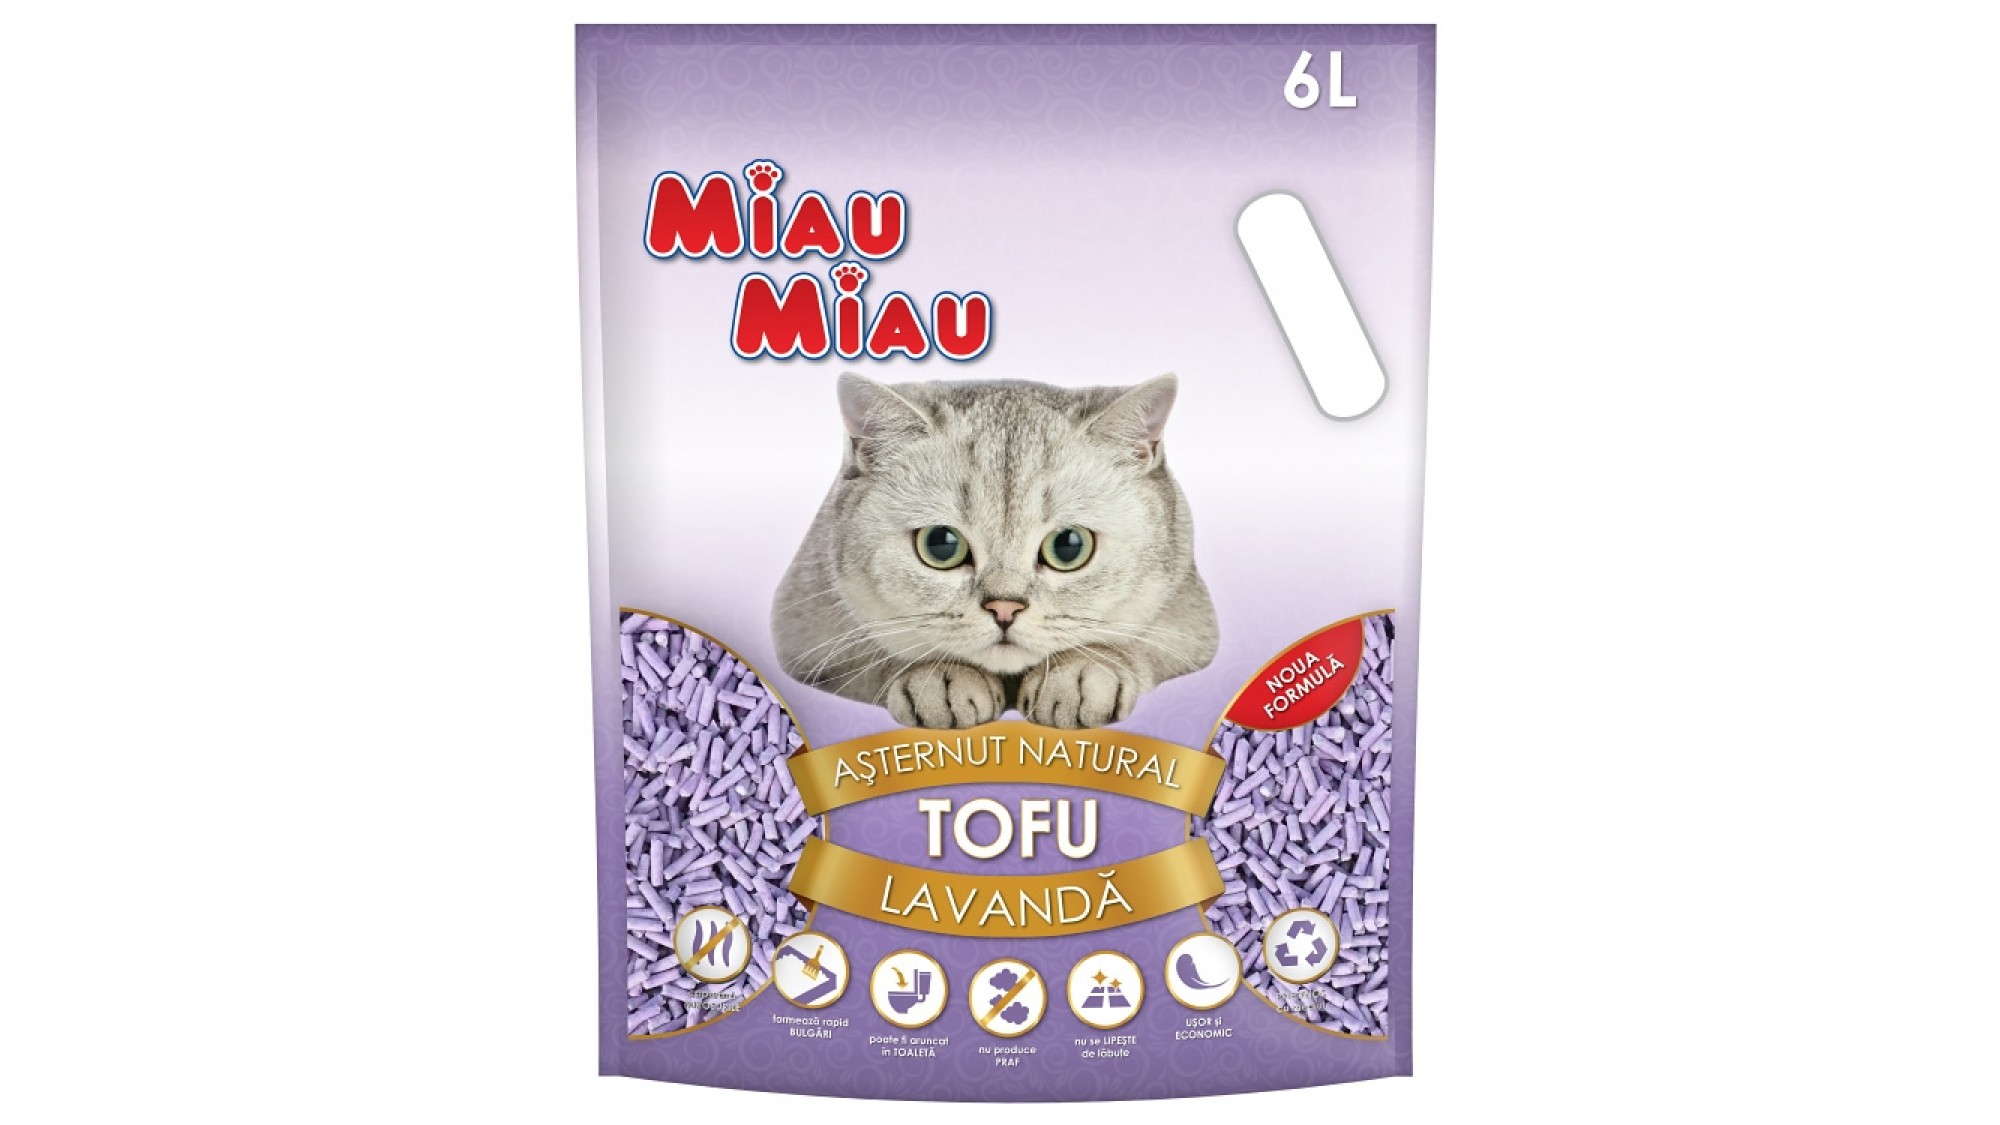 Asternut Natural Din Tofu Pentru Pisici Miau Miau cu lavanda 6 L Accesorii